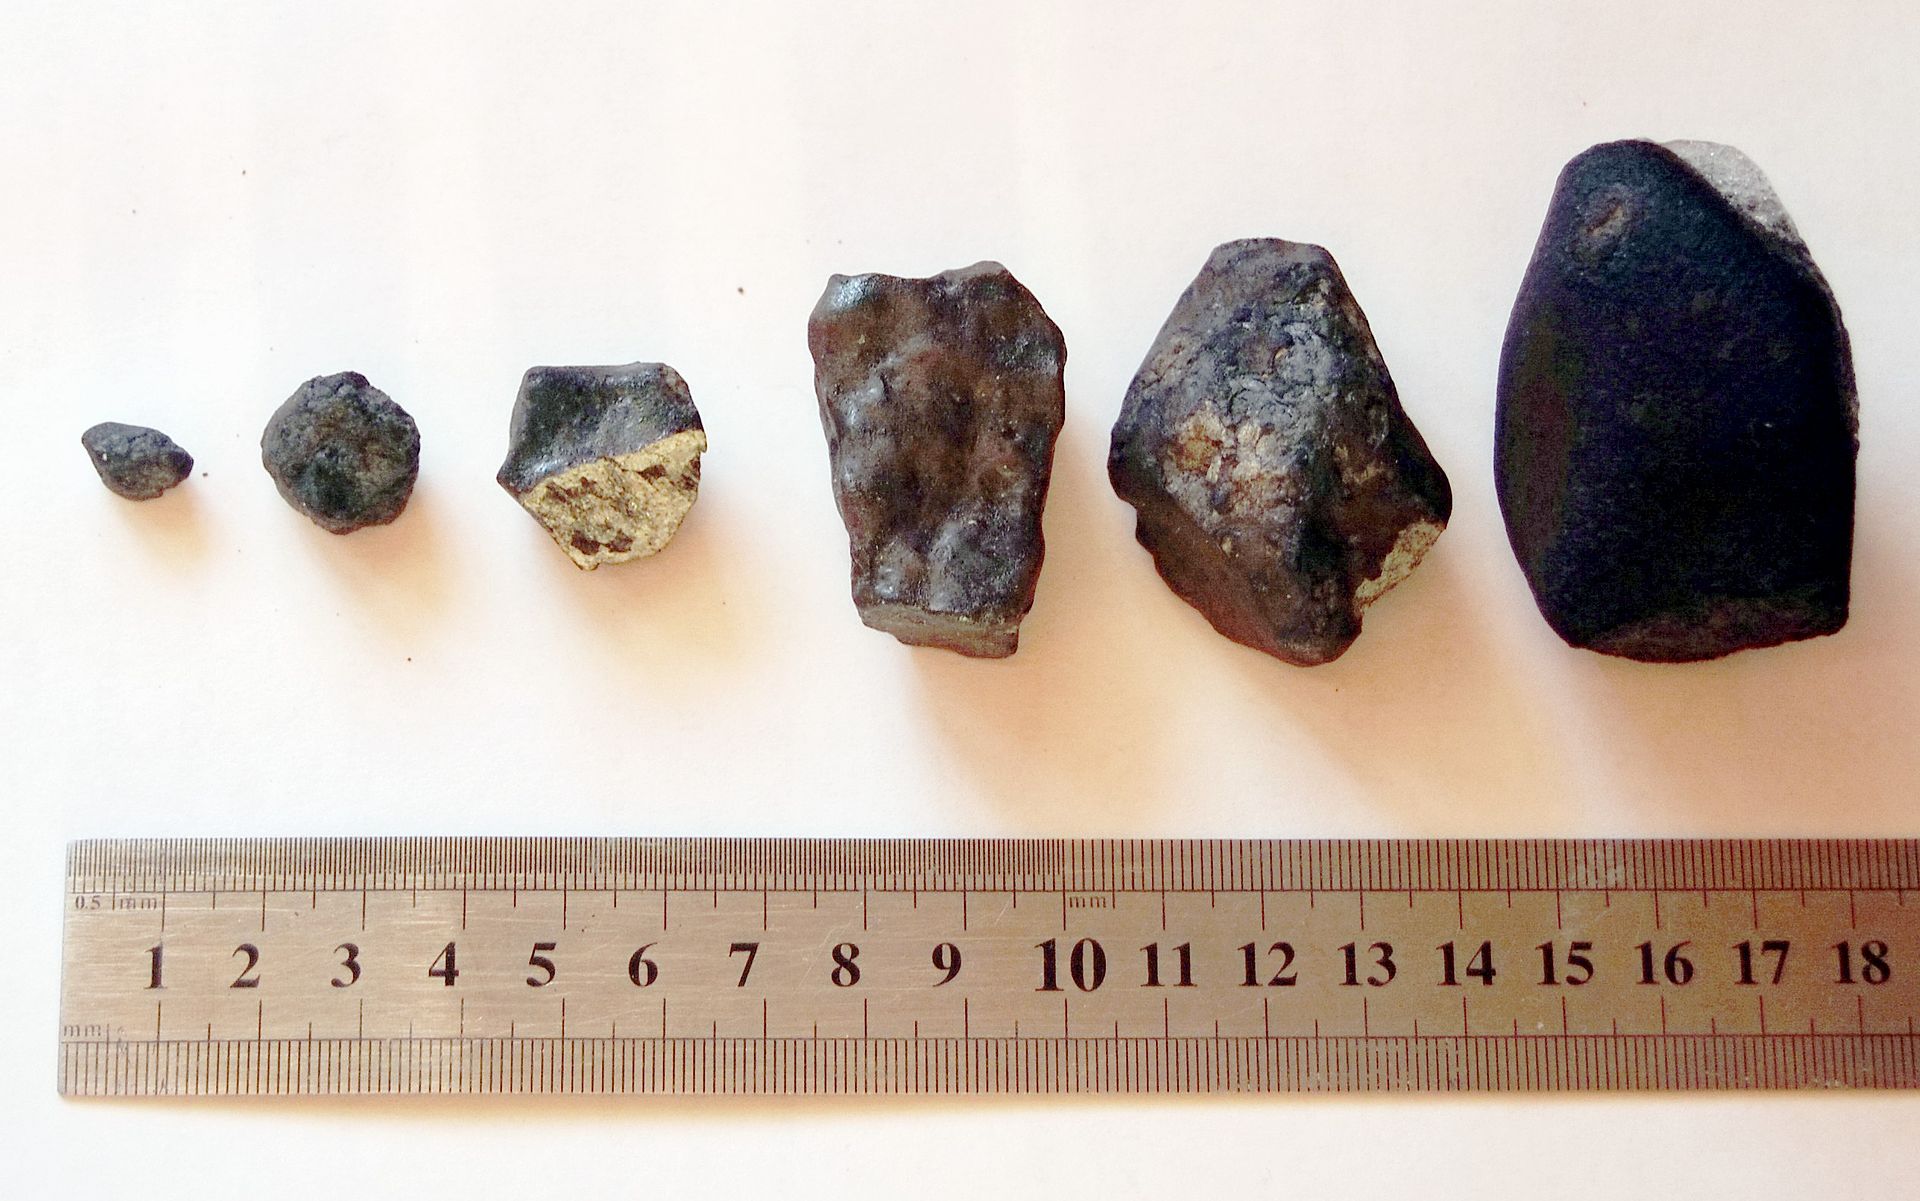 Fragments de la météorite de Tcheliabinsk, tombés en Russie après son explosion en altitude le 15 février 2013. © Alexander Sapozhnikov, Wikimedia Commons, CC by-sa 3.0